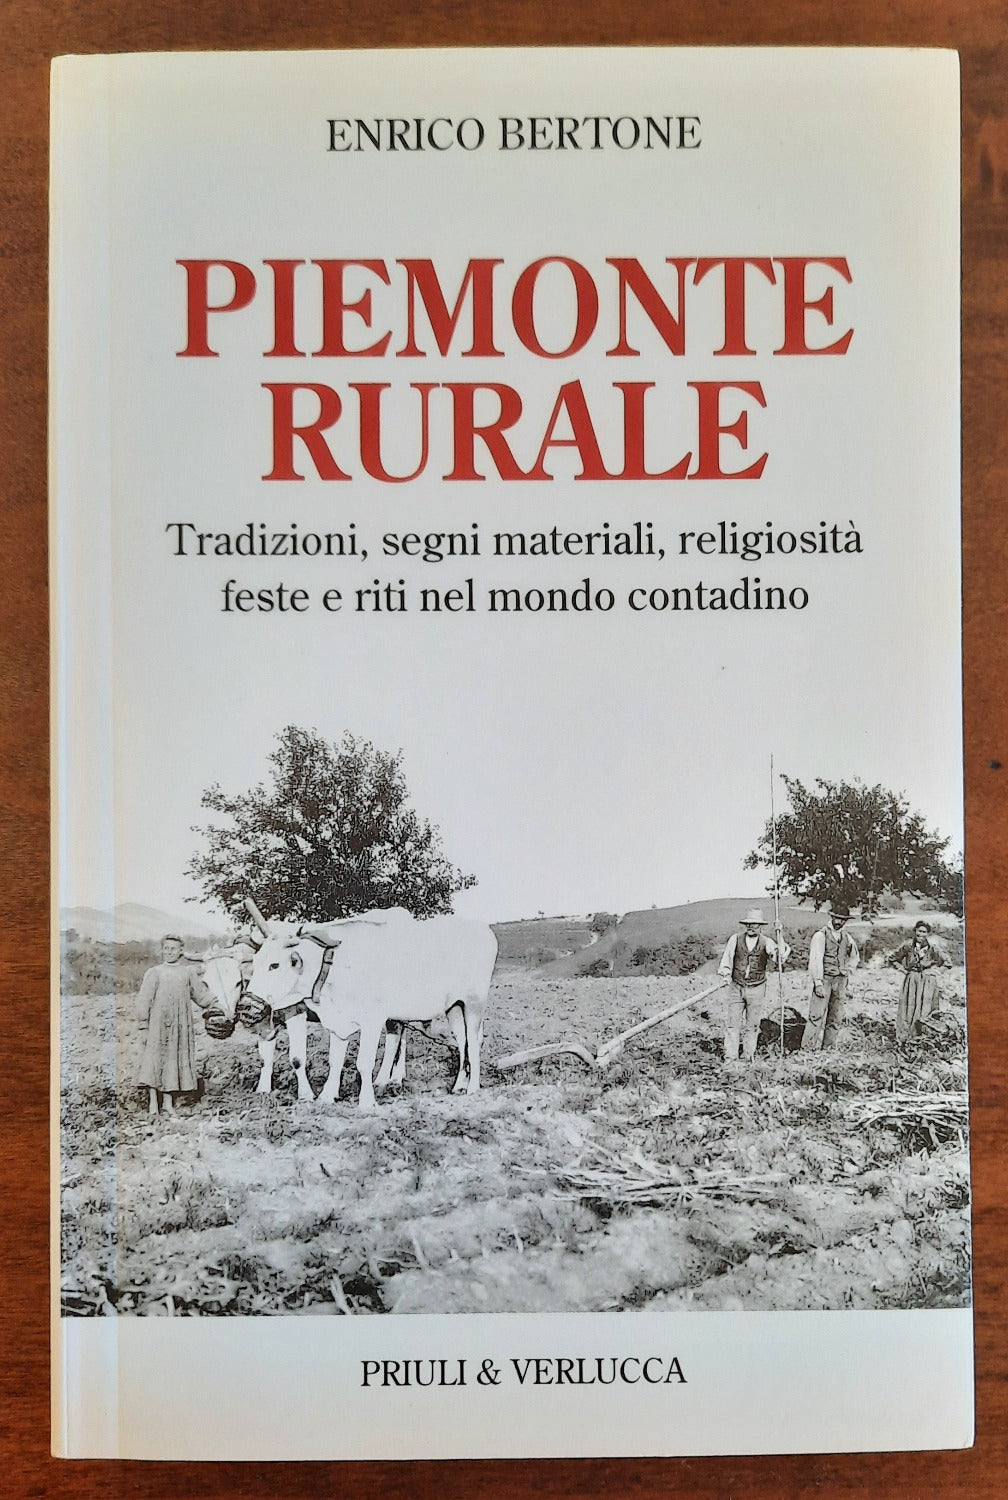 Piemonte rurale. Tradizioni, segni materiali, religiosità, feste e riti nel mondo contadino